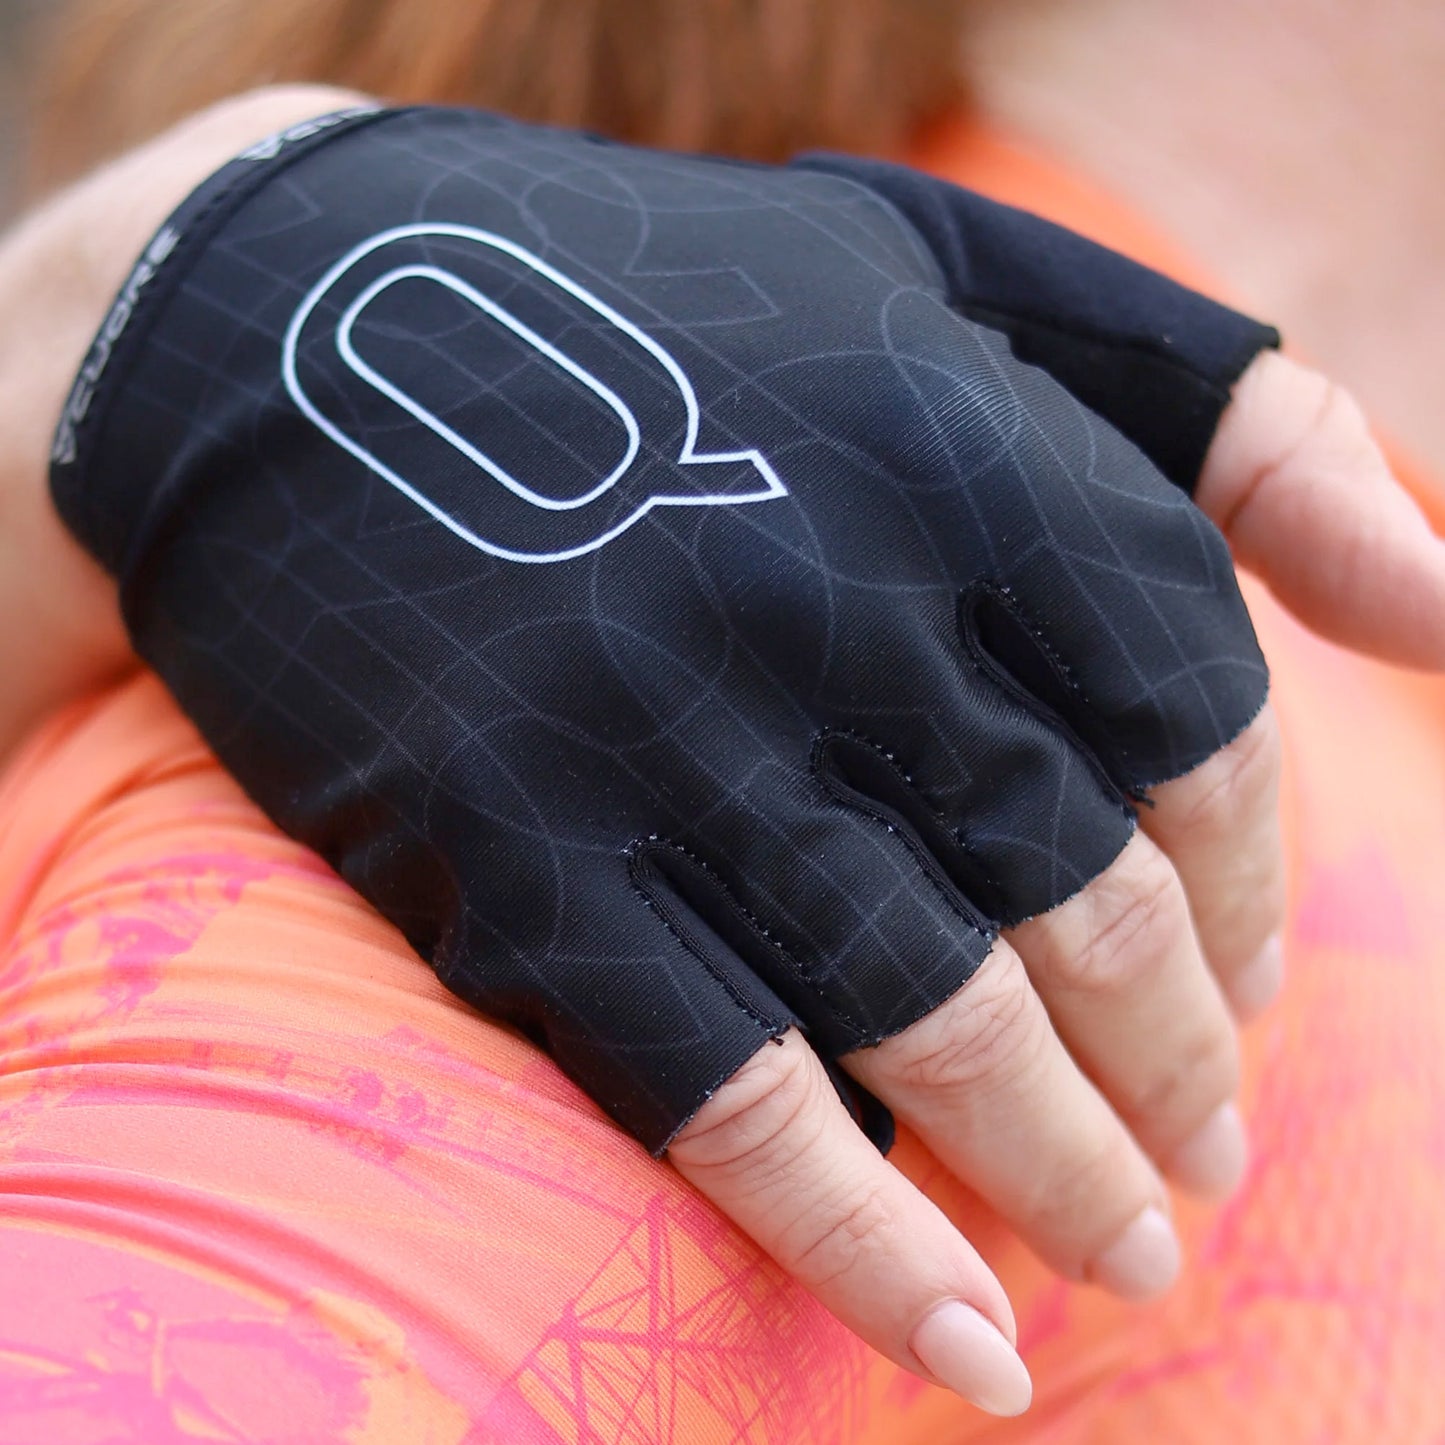 Cuore Women's QOM Summer Gloves - Black